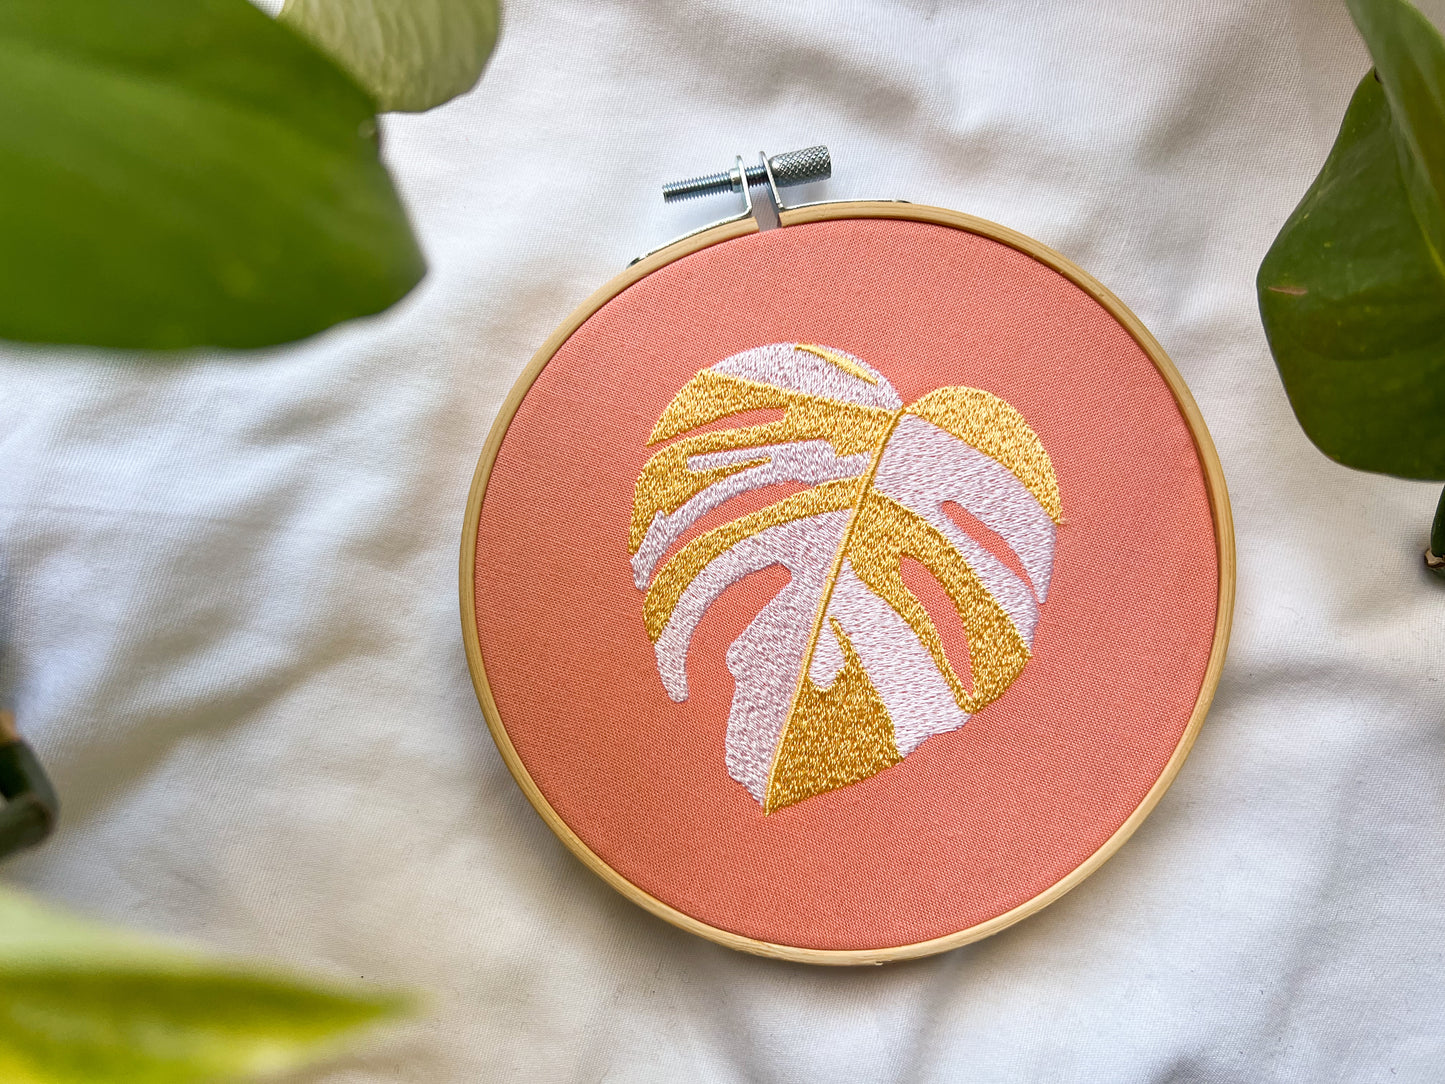 pastel monstera embroidery hoop